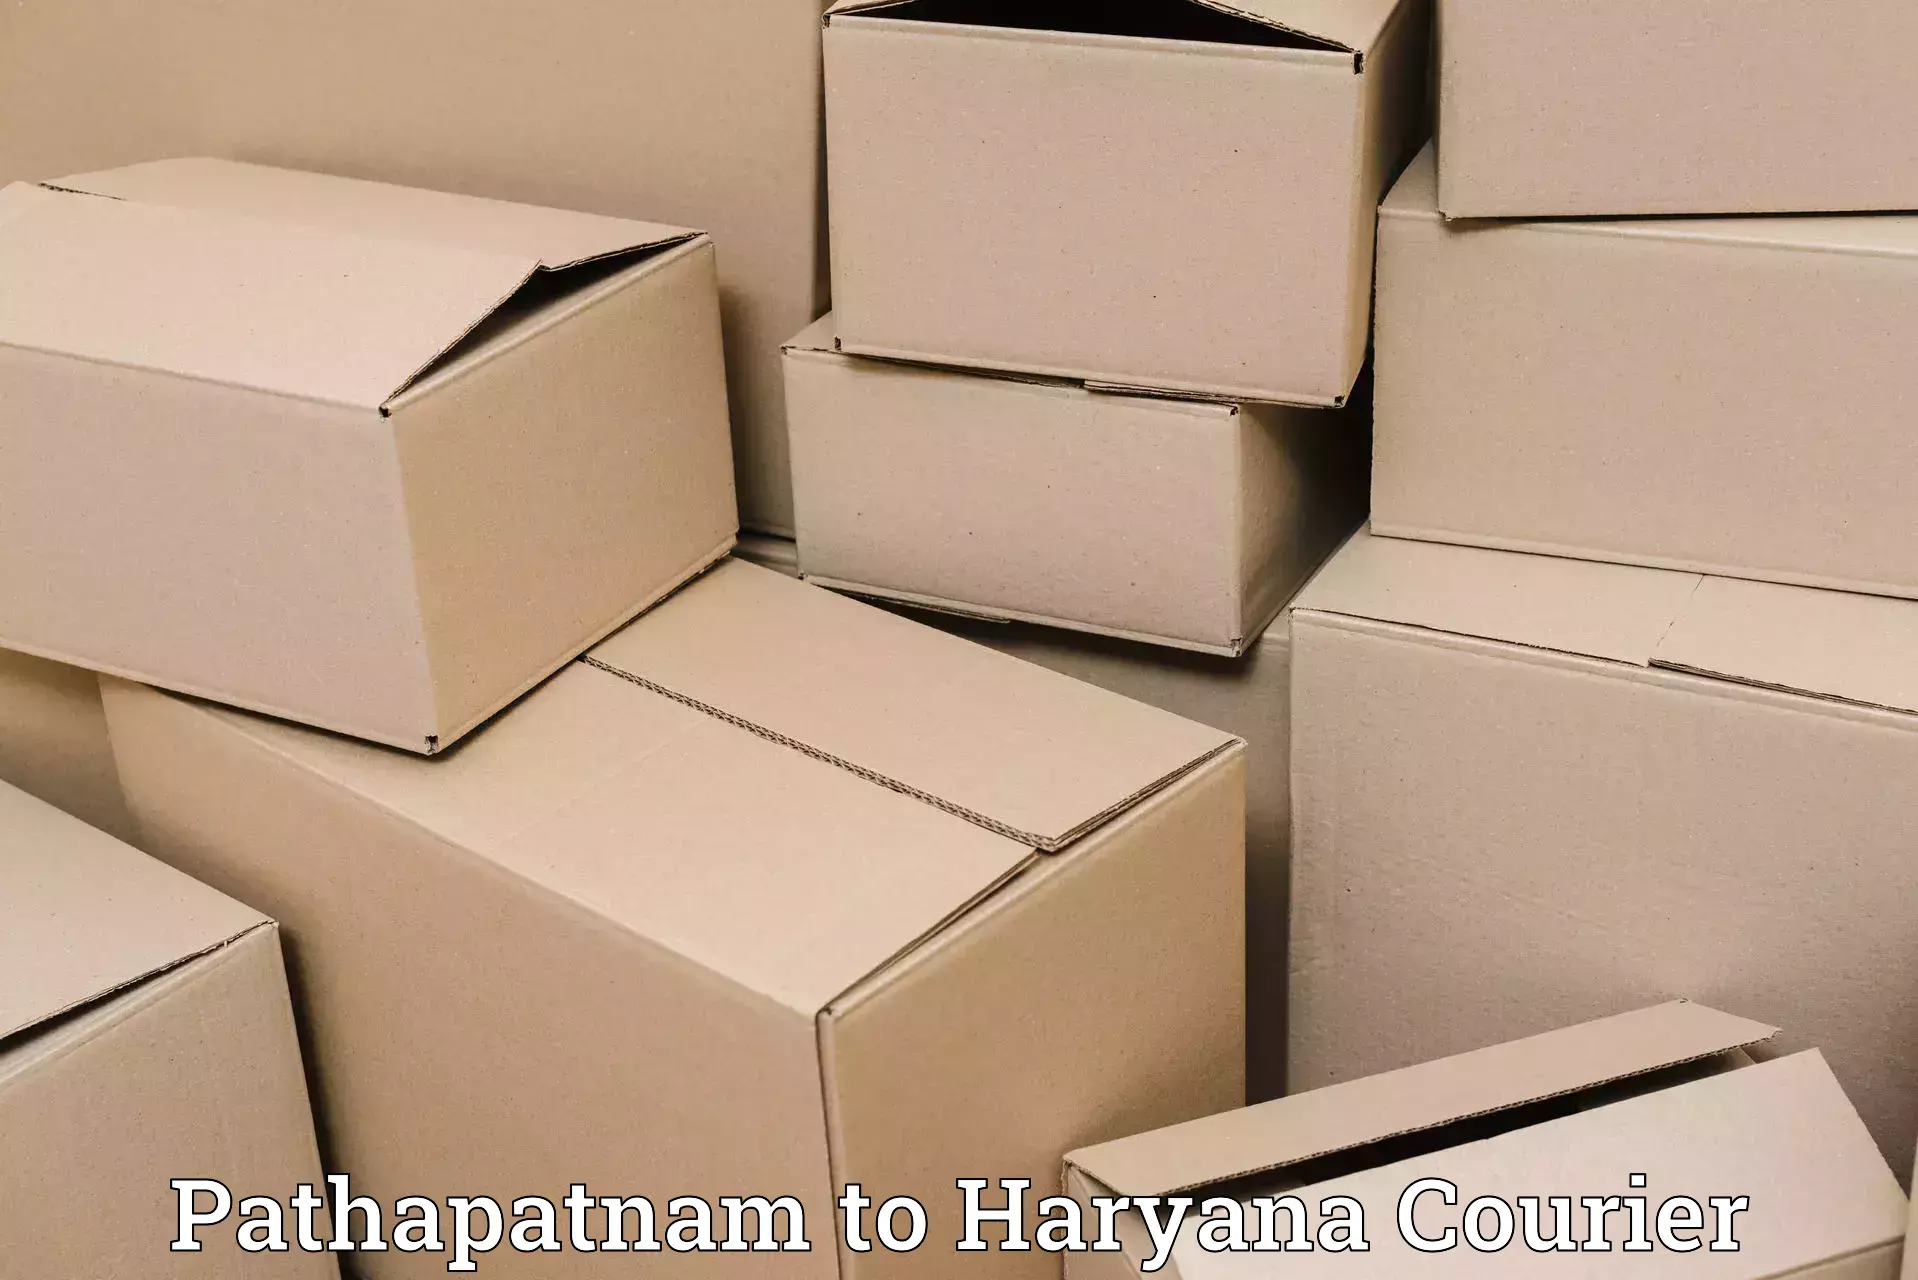 Affordable shipping rates Pathapatnam to Chirya